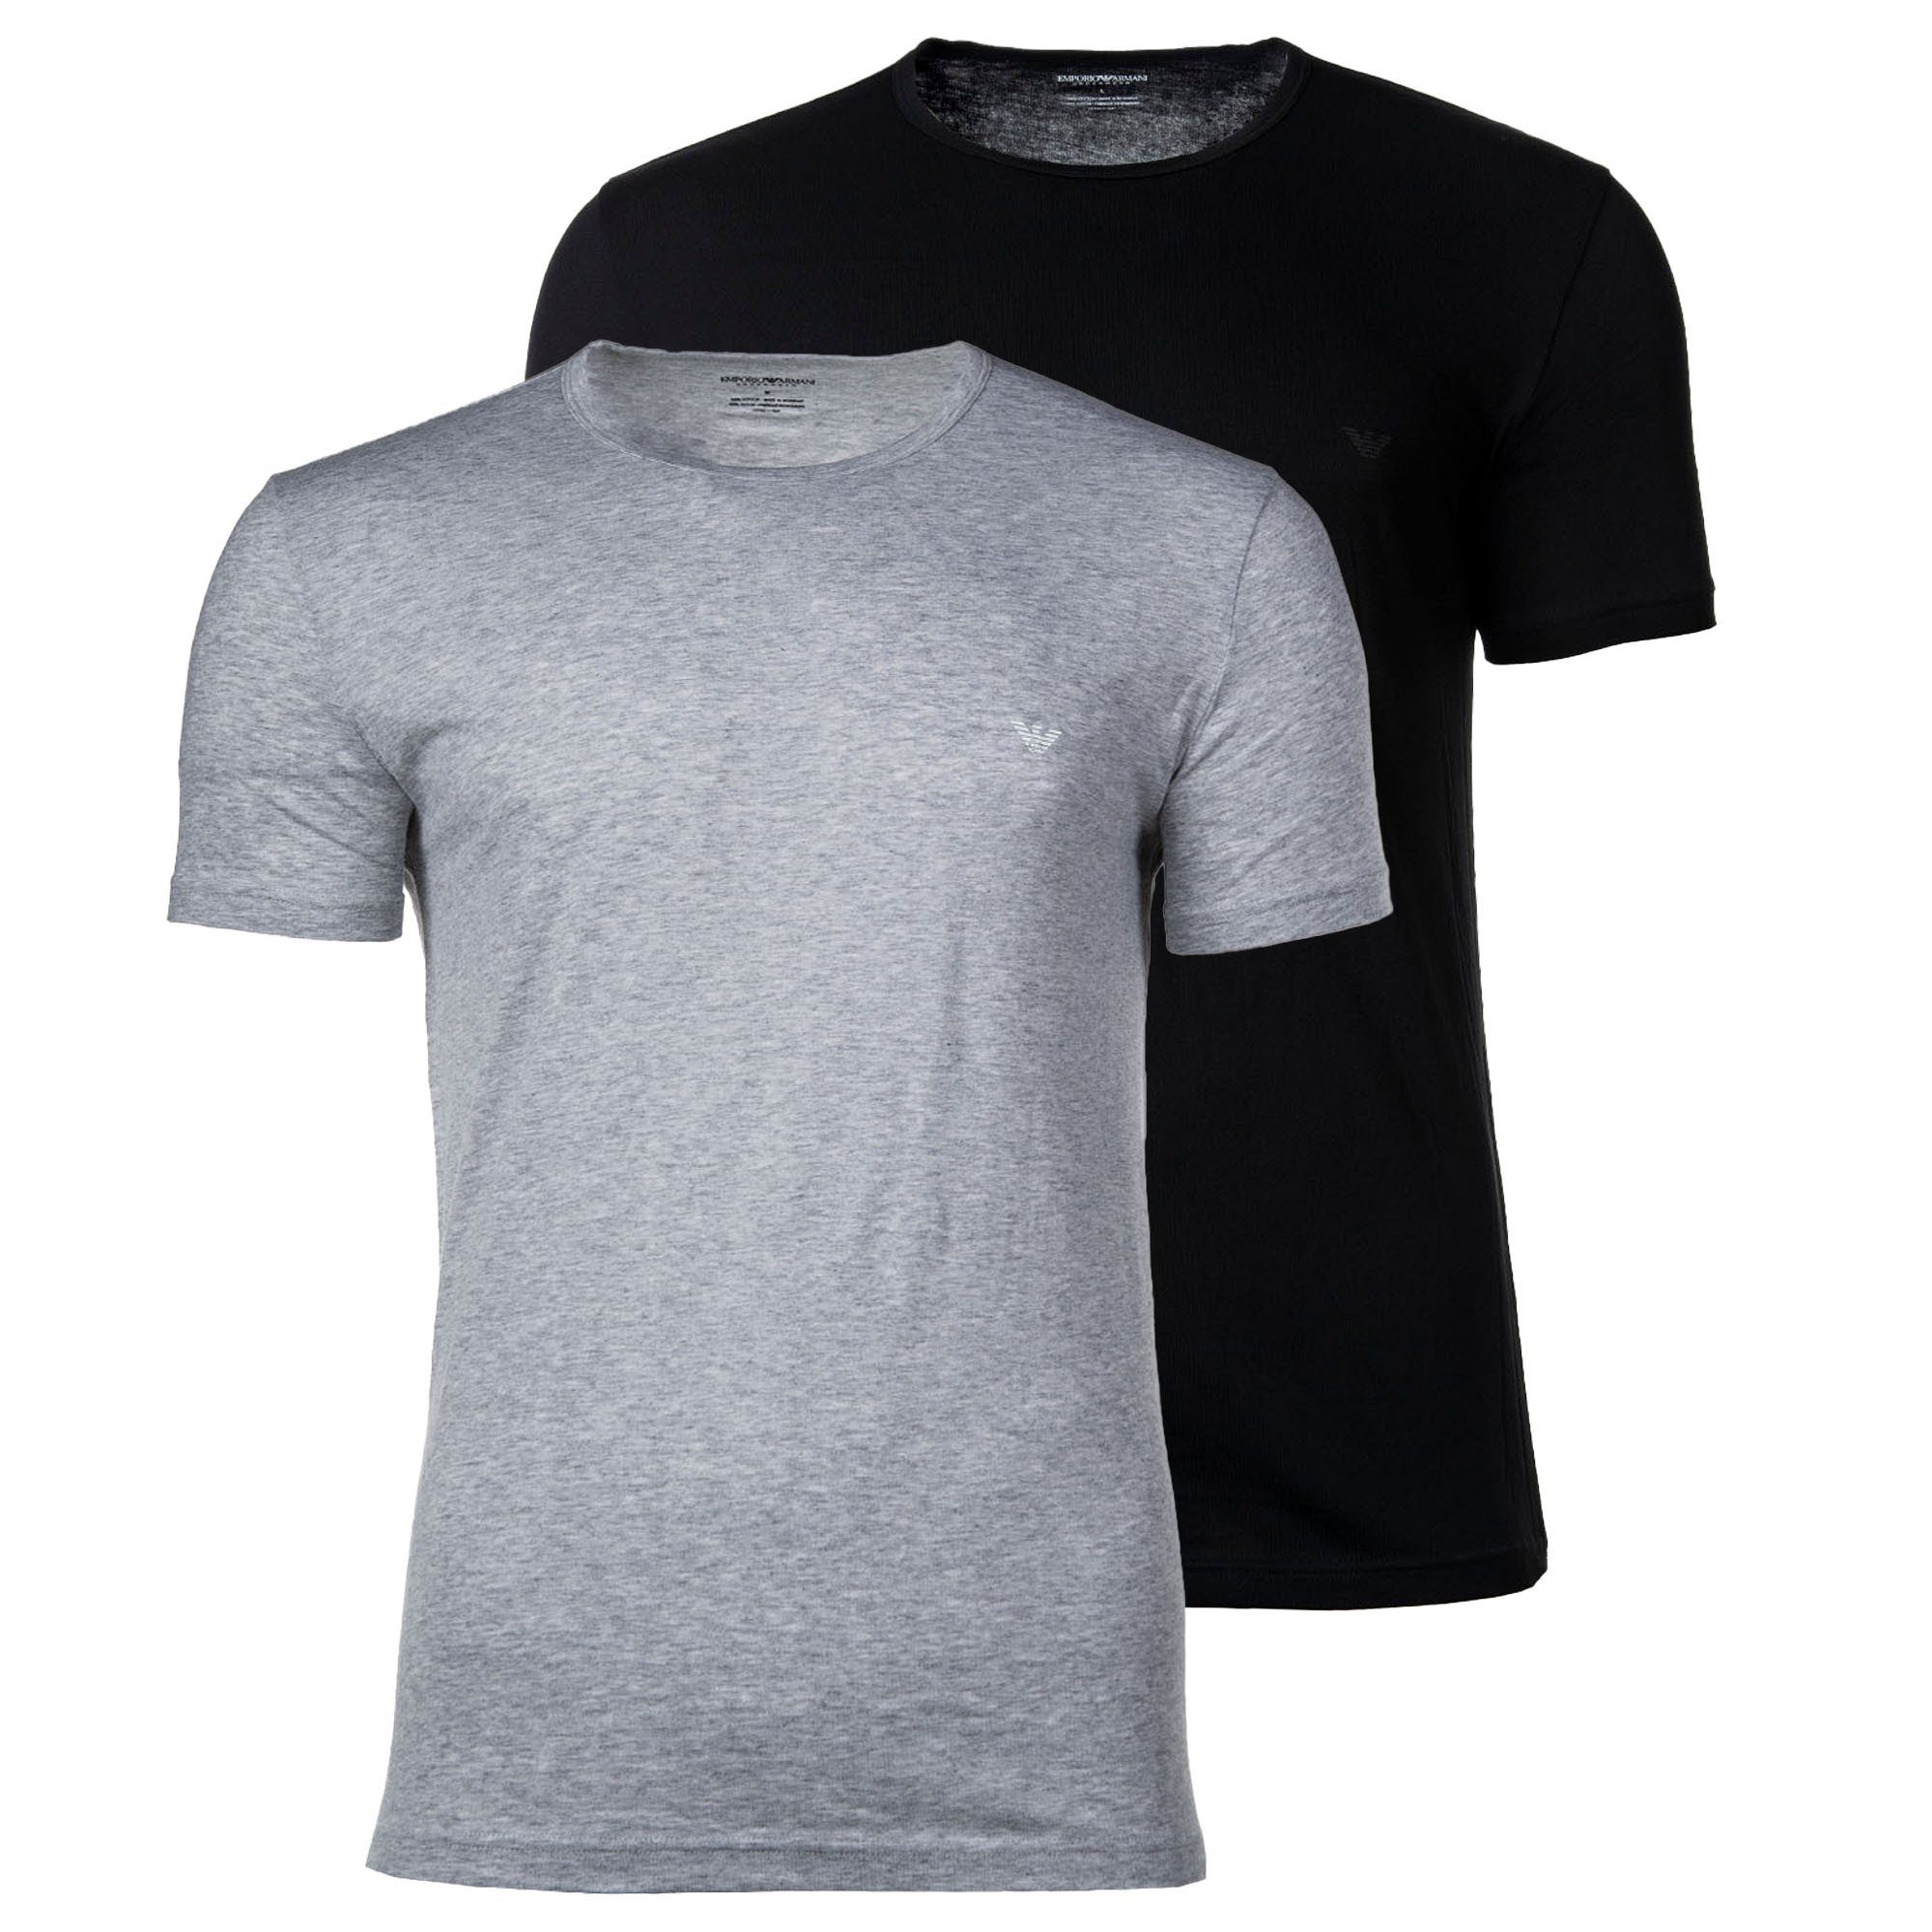 Crew Armani T-Shirt Emporio 2er Rundhals Pack T-Shirt Herren Schwarz/Grau - Neck,